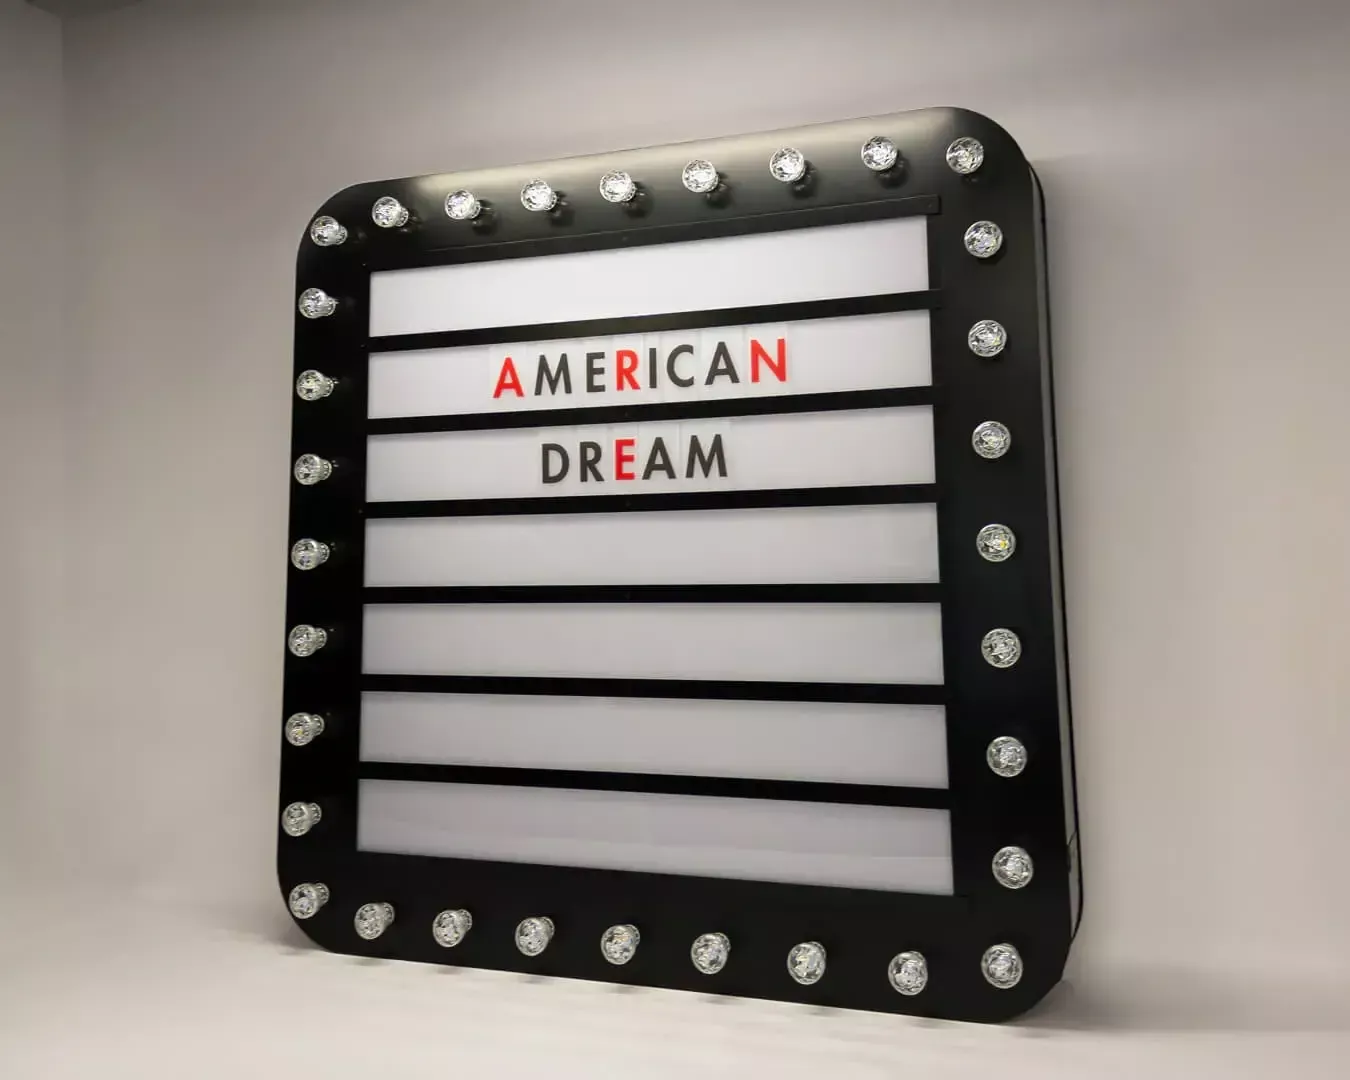 American Dream - tablica z żarówkami, z możliwością zmiany liter, w stylu retro.